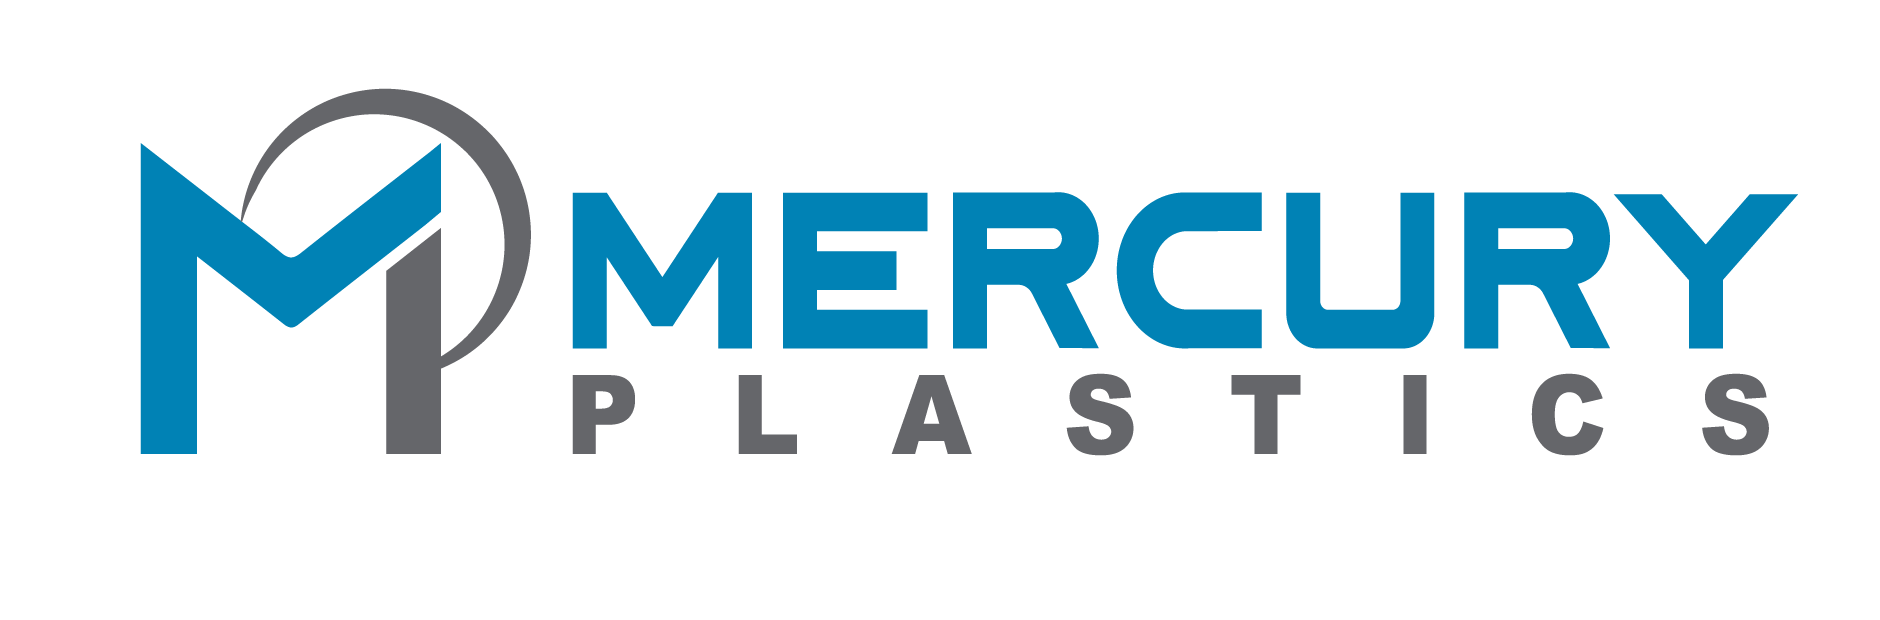 Mercury Plastics Inc and Mercury Plastics of Canada